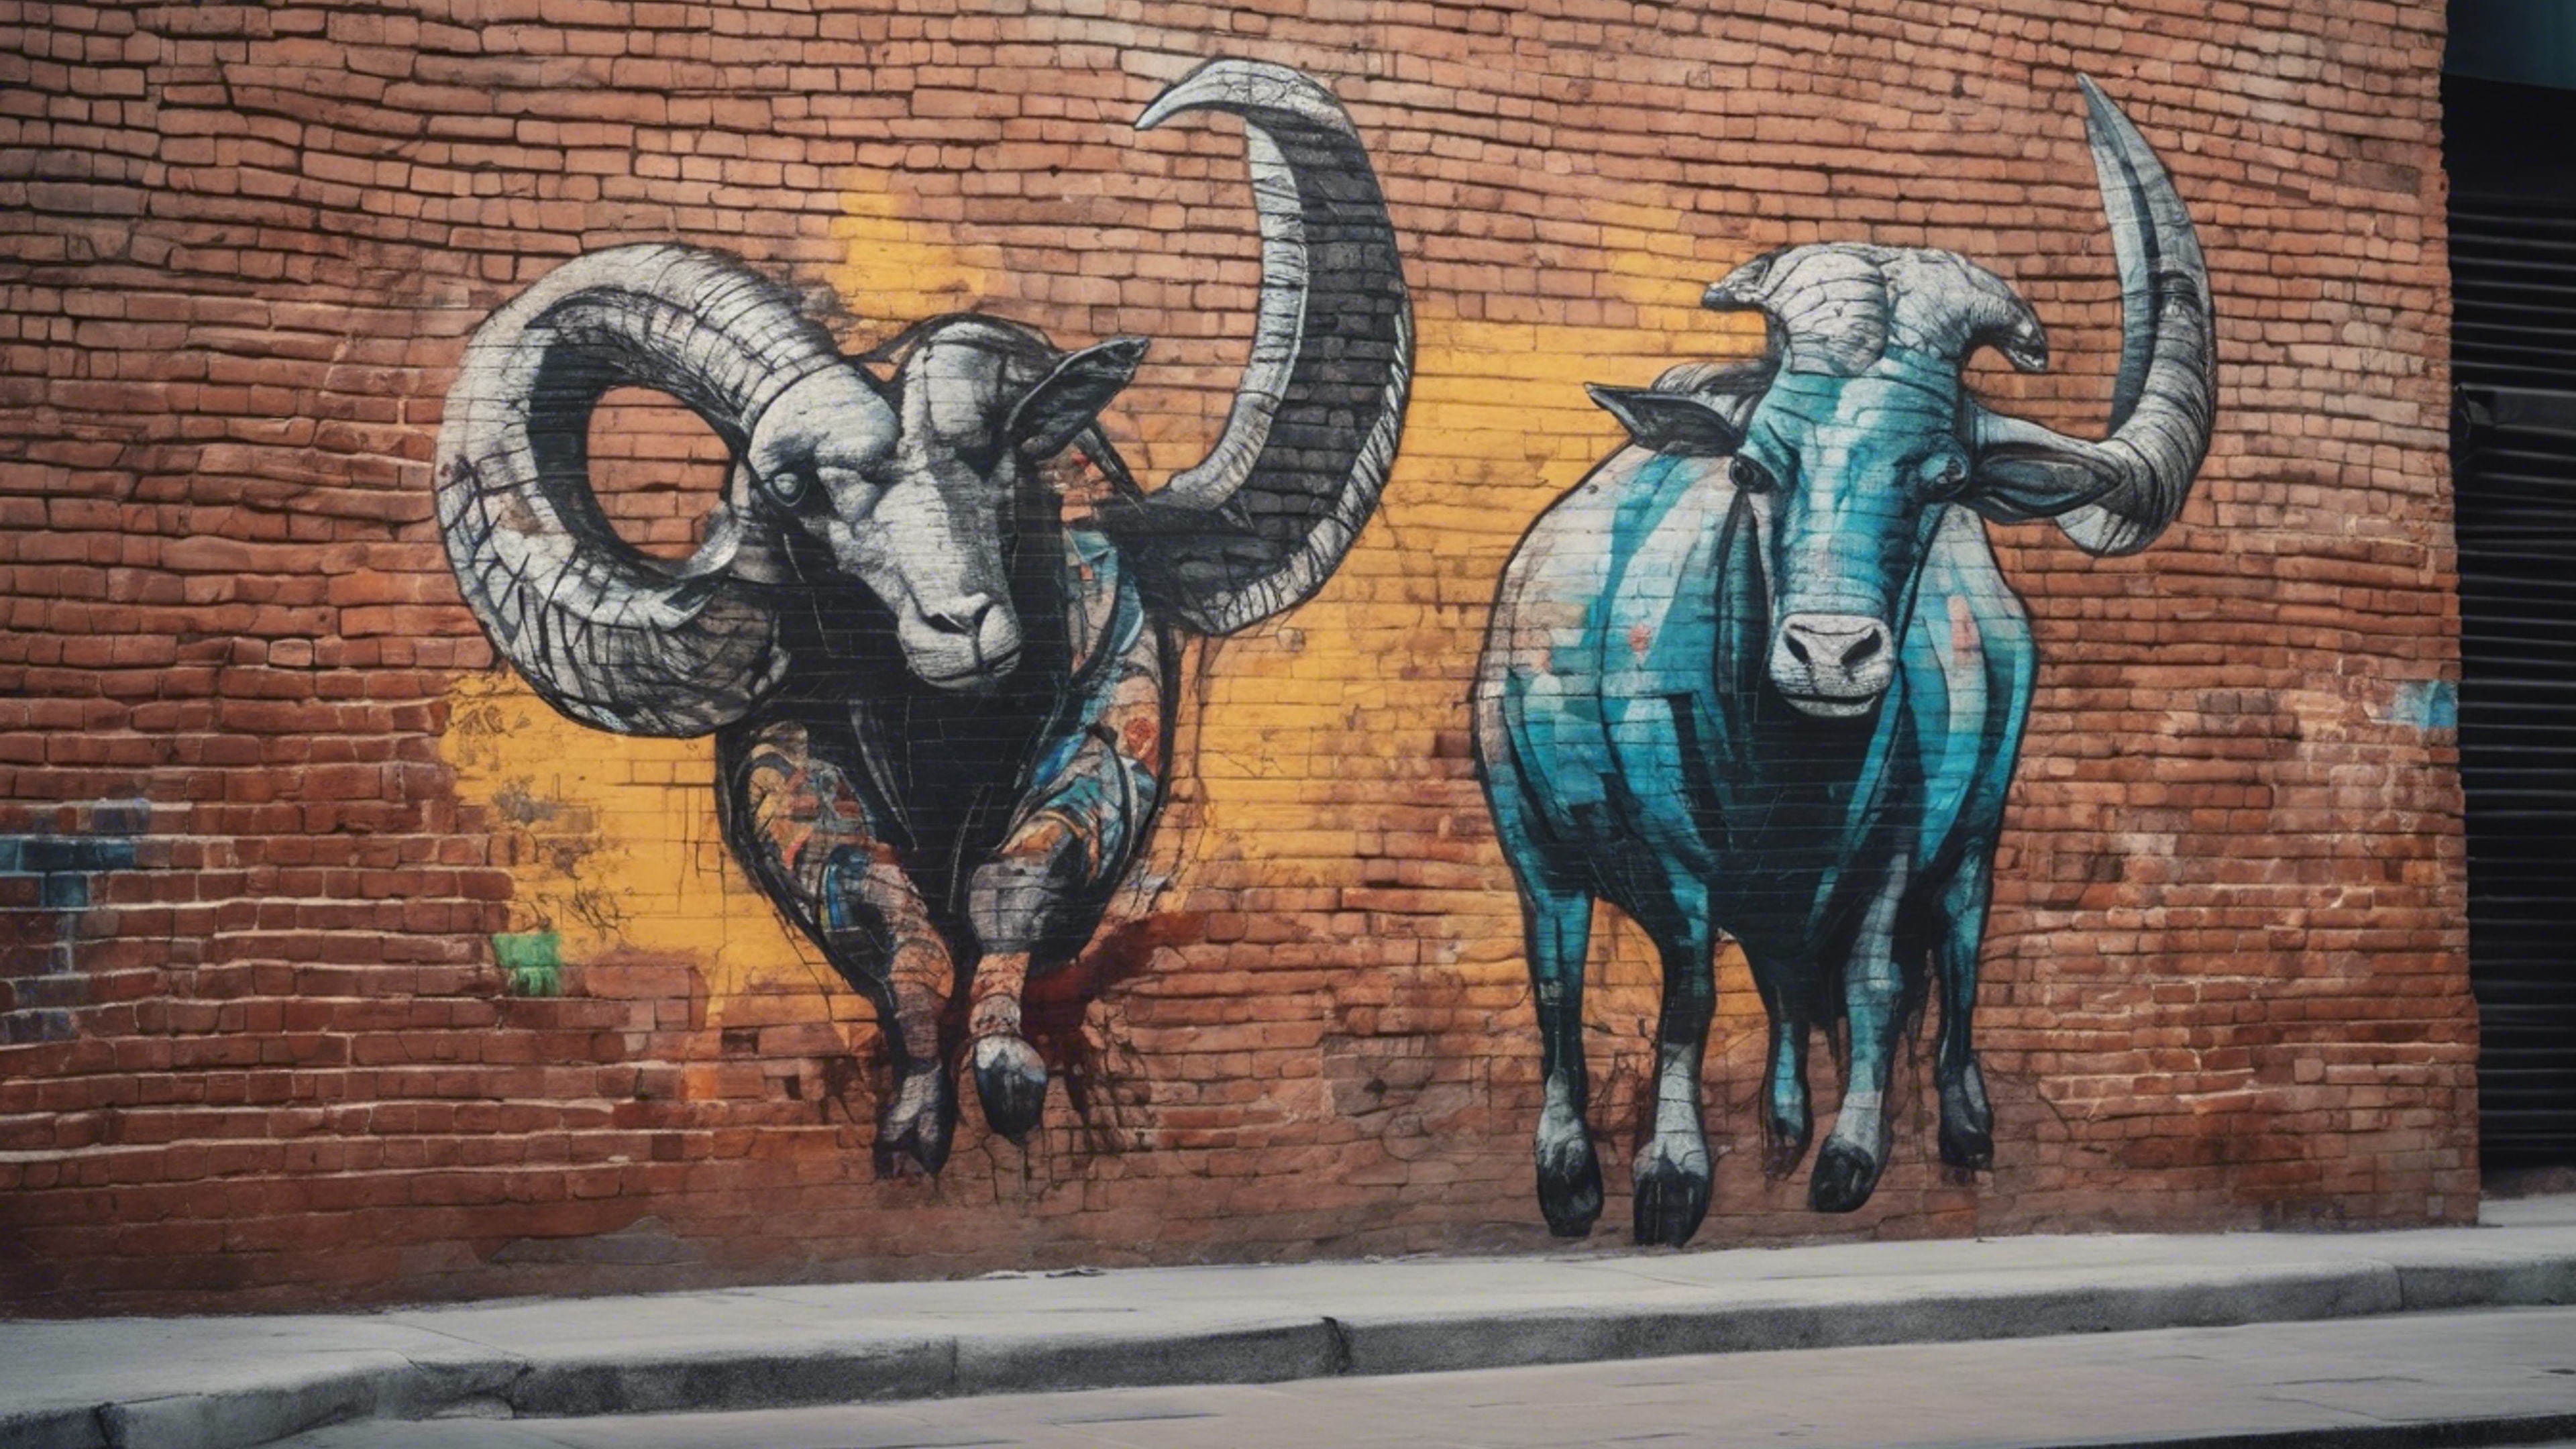 A Capricorn painted as street art on a brick wall in a busy city street. duvar kağıdı[8124c45194ee4830b5c7]